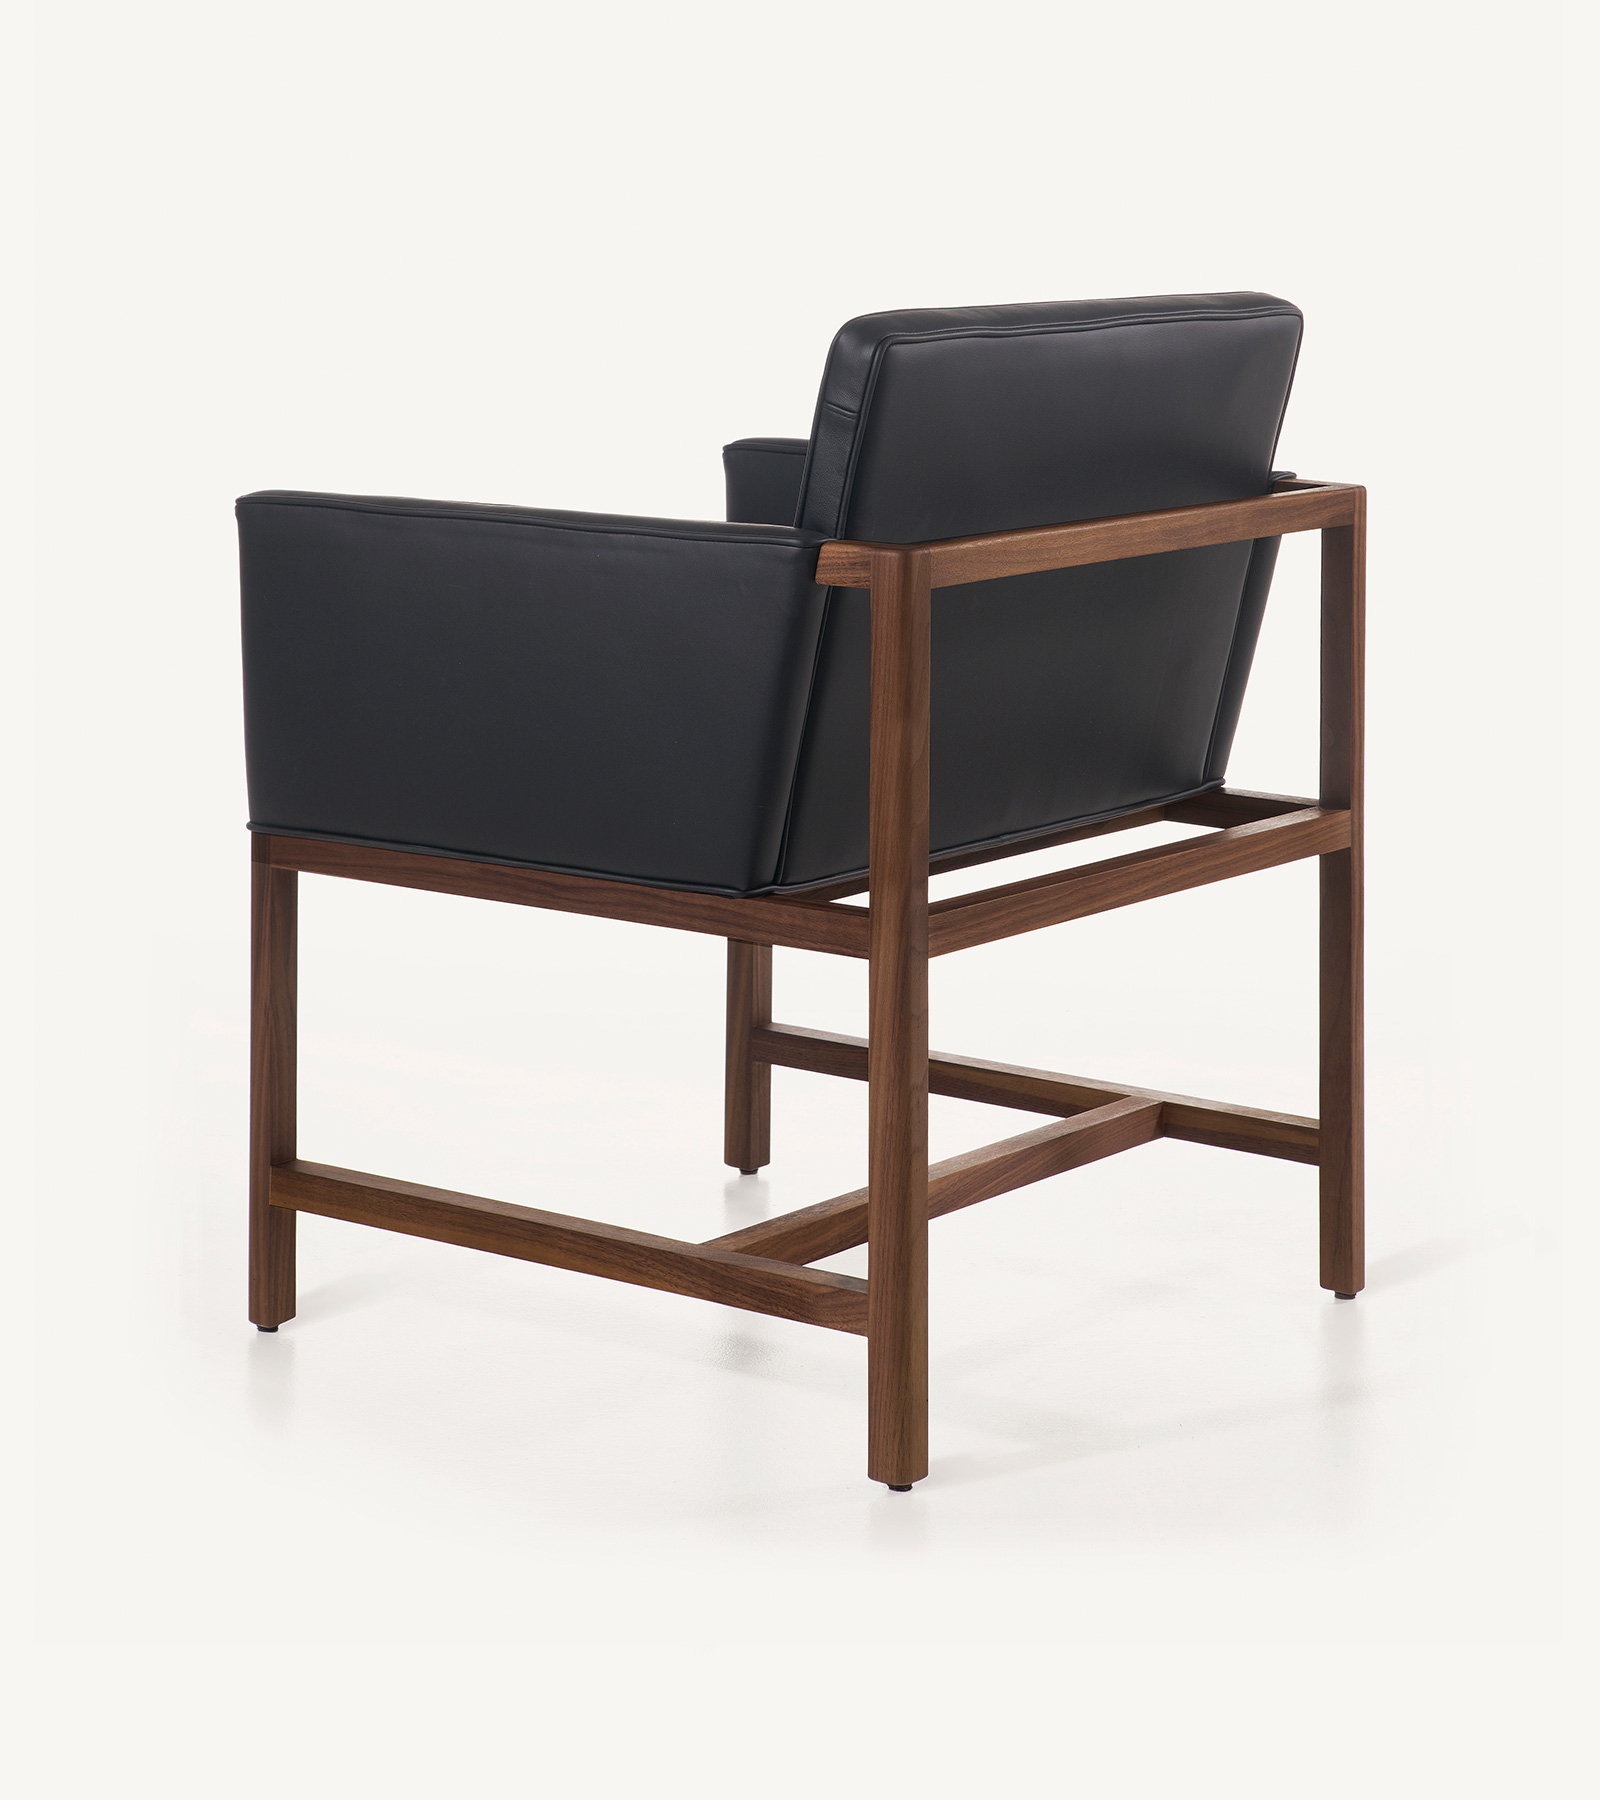 TinnappleMetz-bassamfellows-Wood-Frame-Chair-03